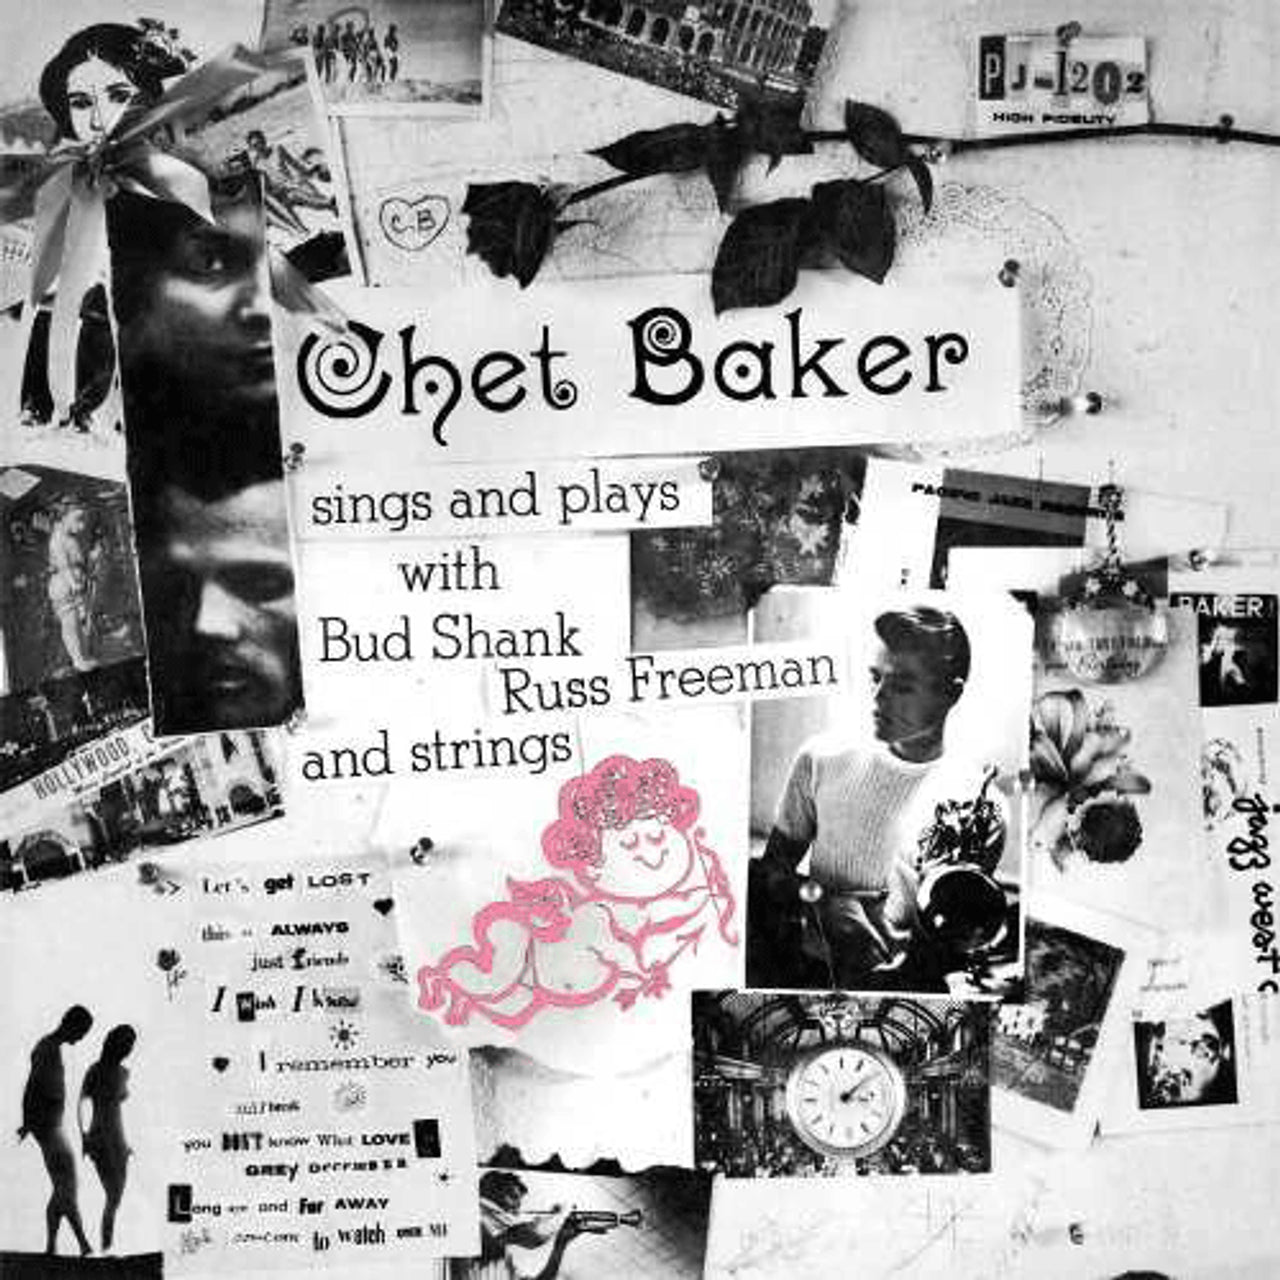 CHET BAKER SINGS AND PLAYS LP (BLUE NOTE TONE POET SERIES)